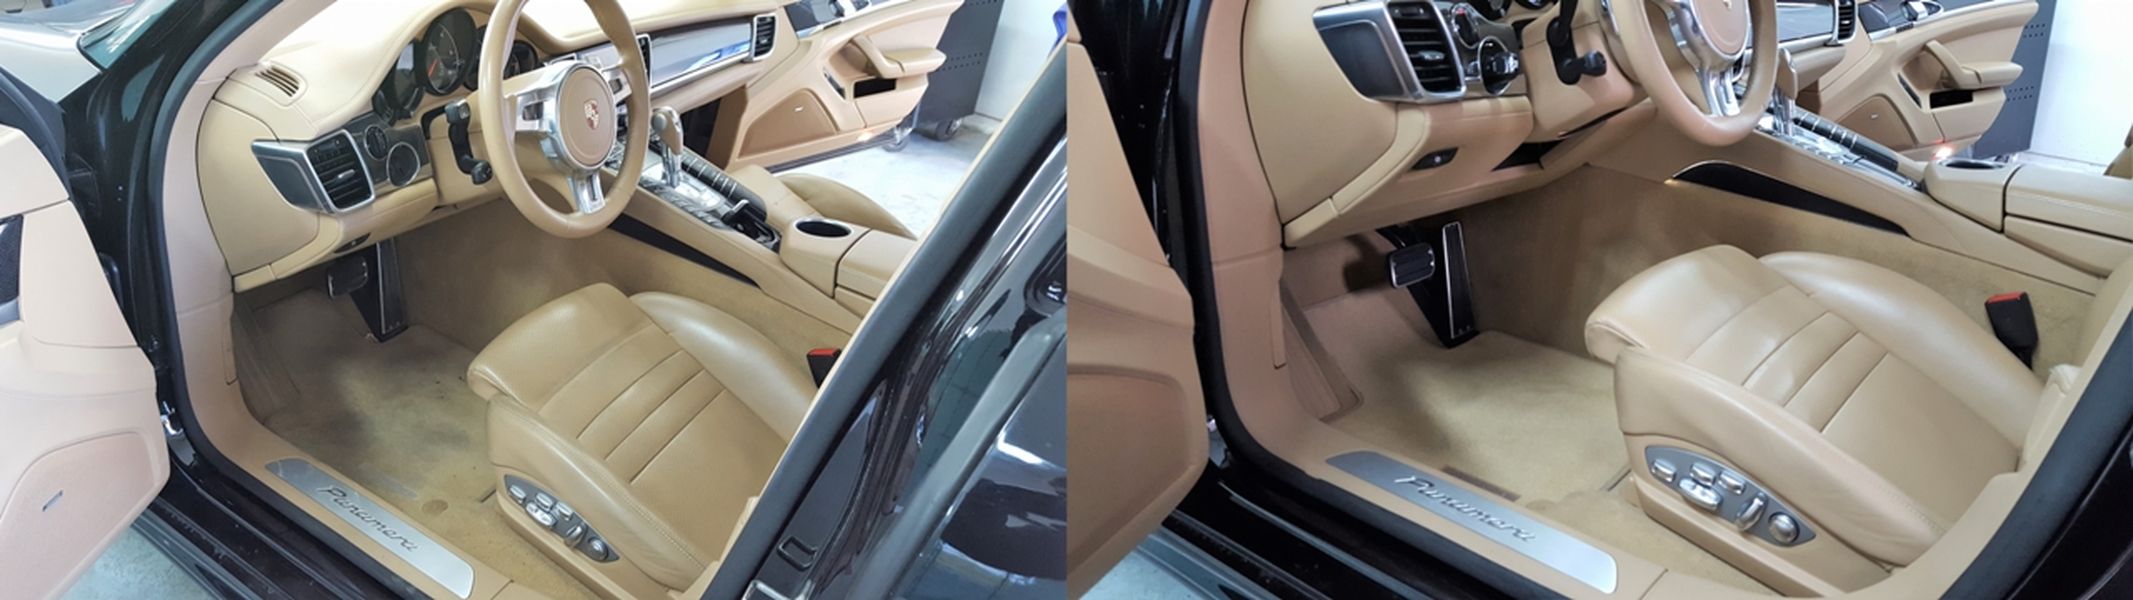 Wnętrze samochodu przed i po